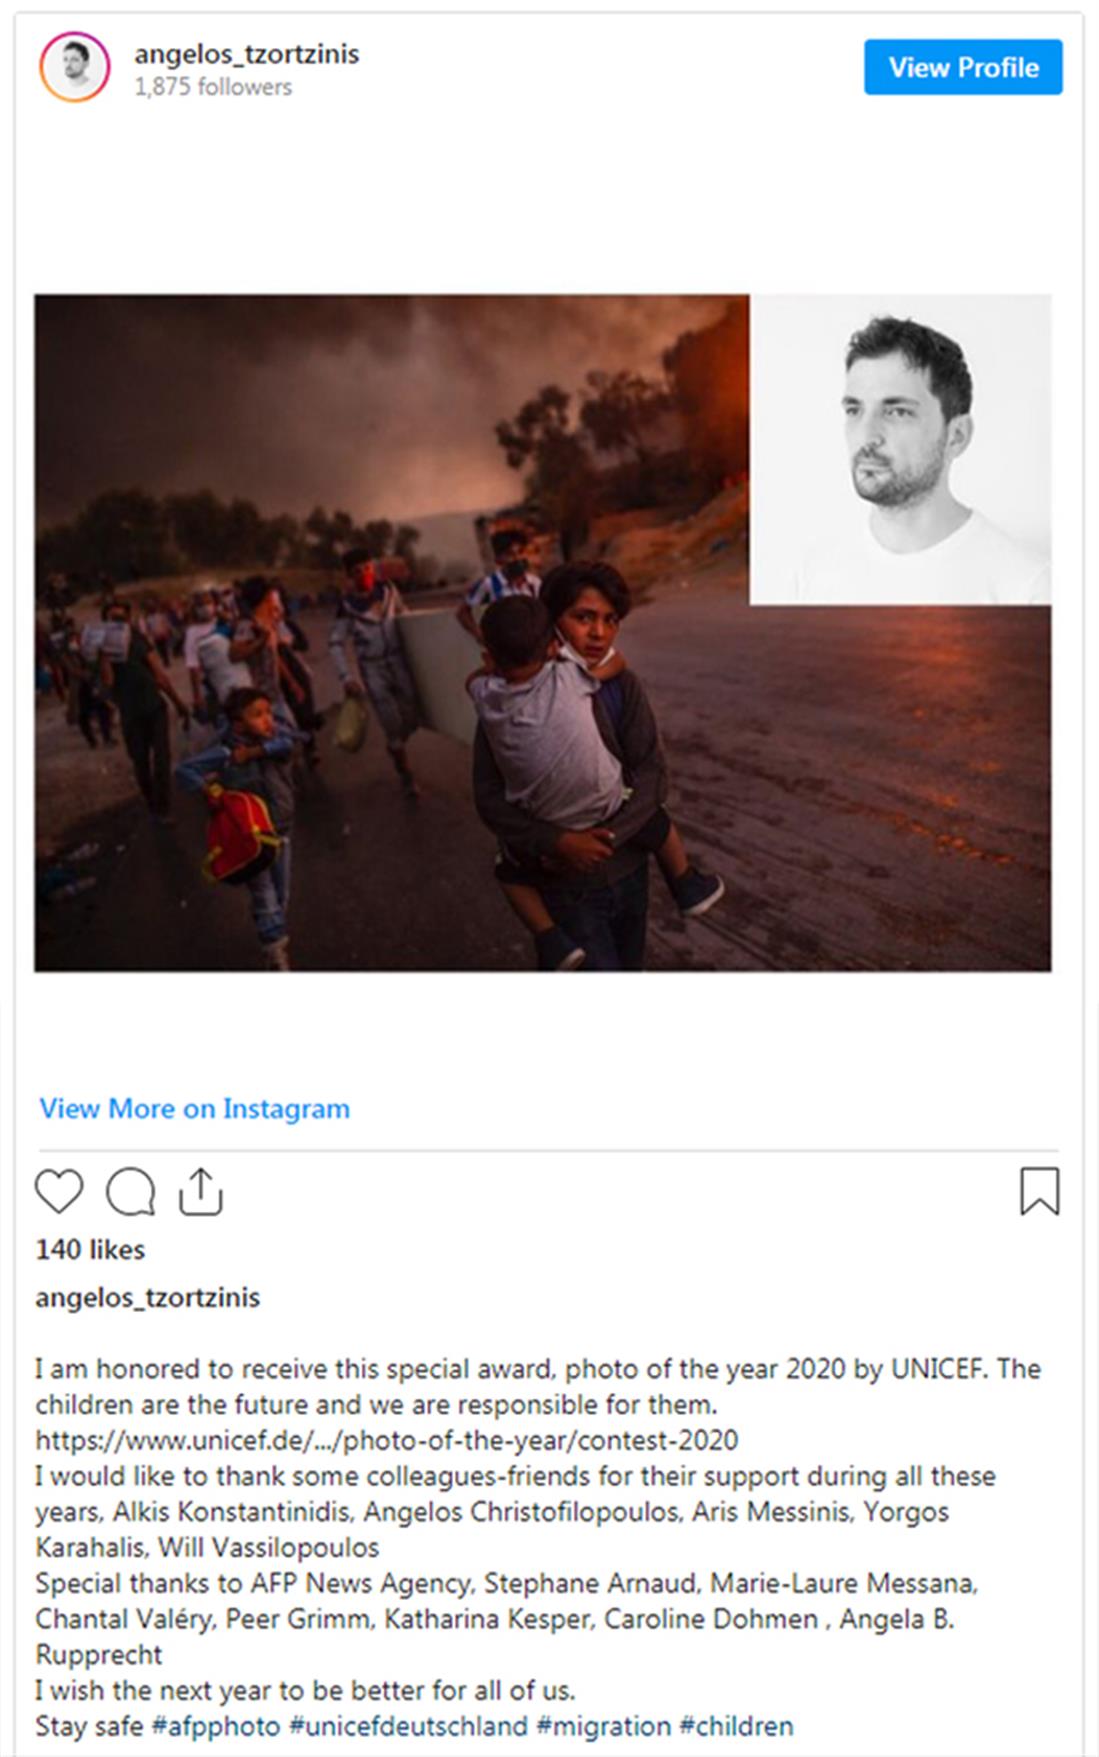 φωτογράφος - Άγγελος Τζωρτζίνης - βραβείο Unicef - φωτογραφία της χρονιάς 2020